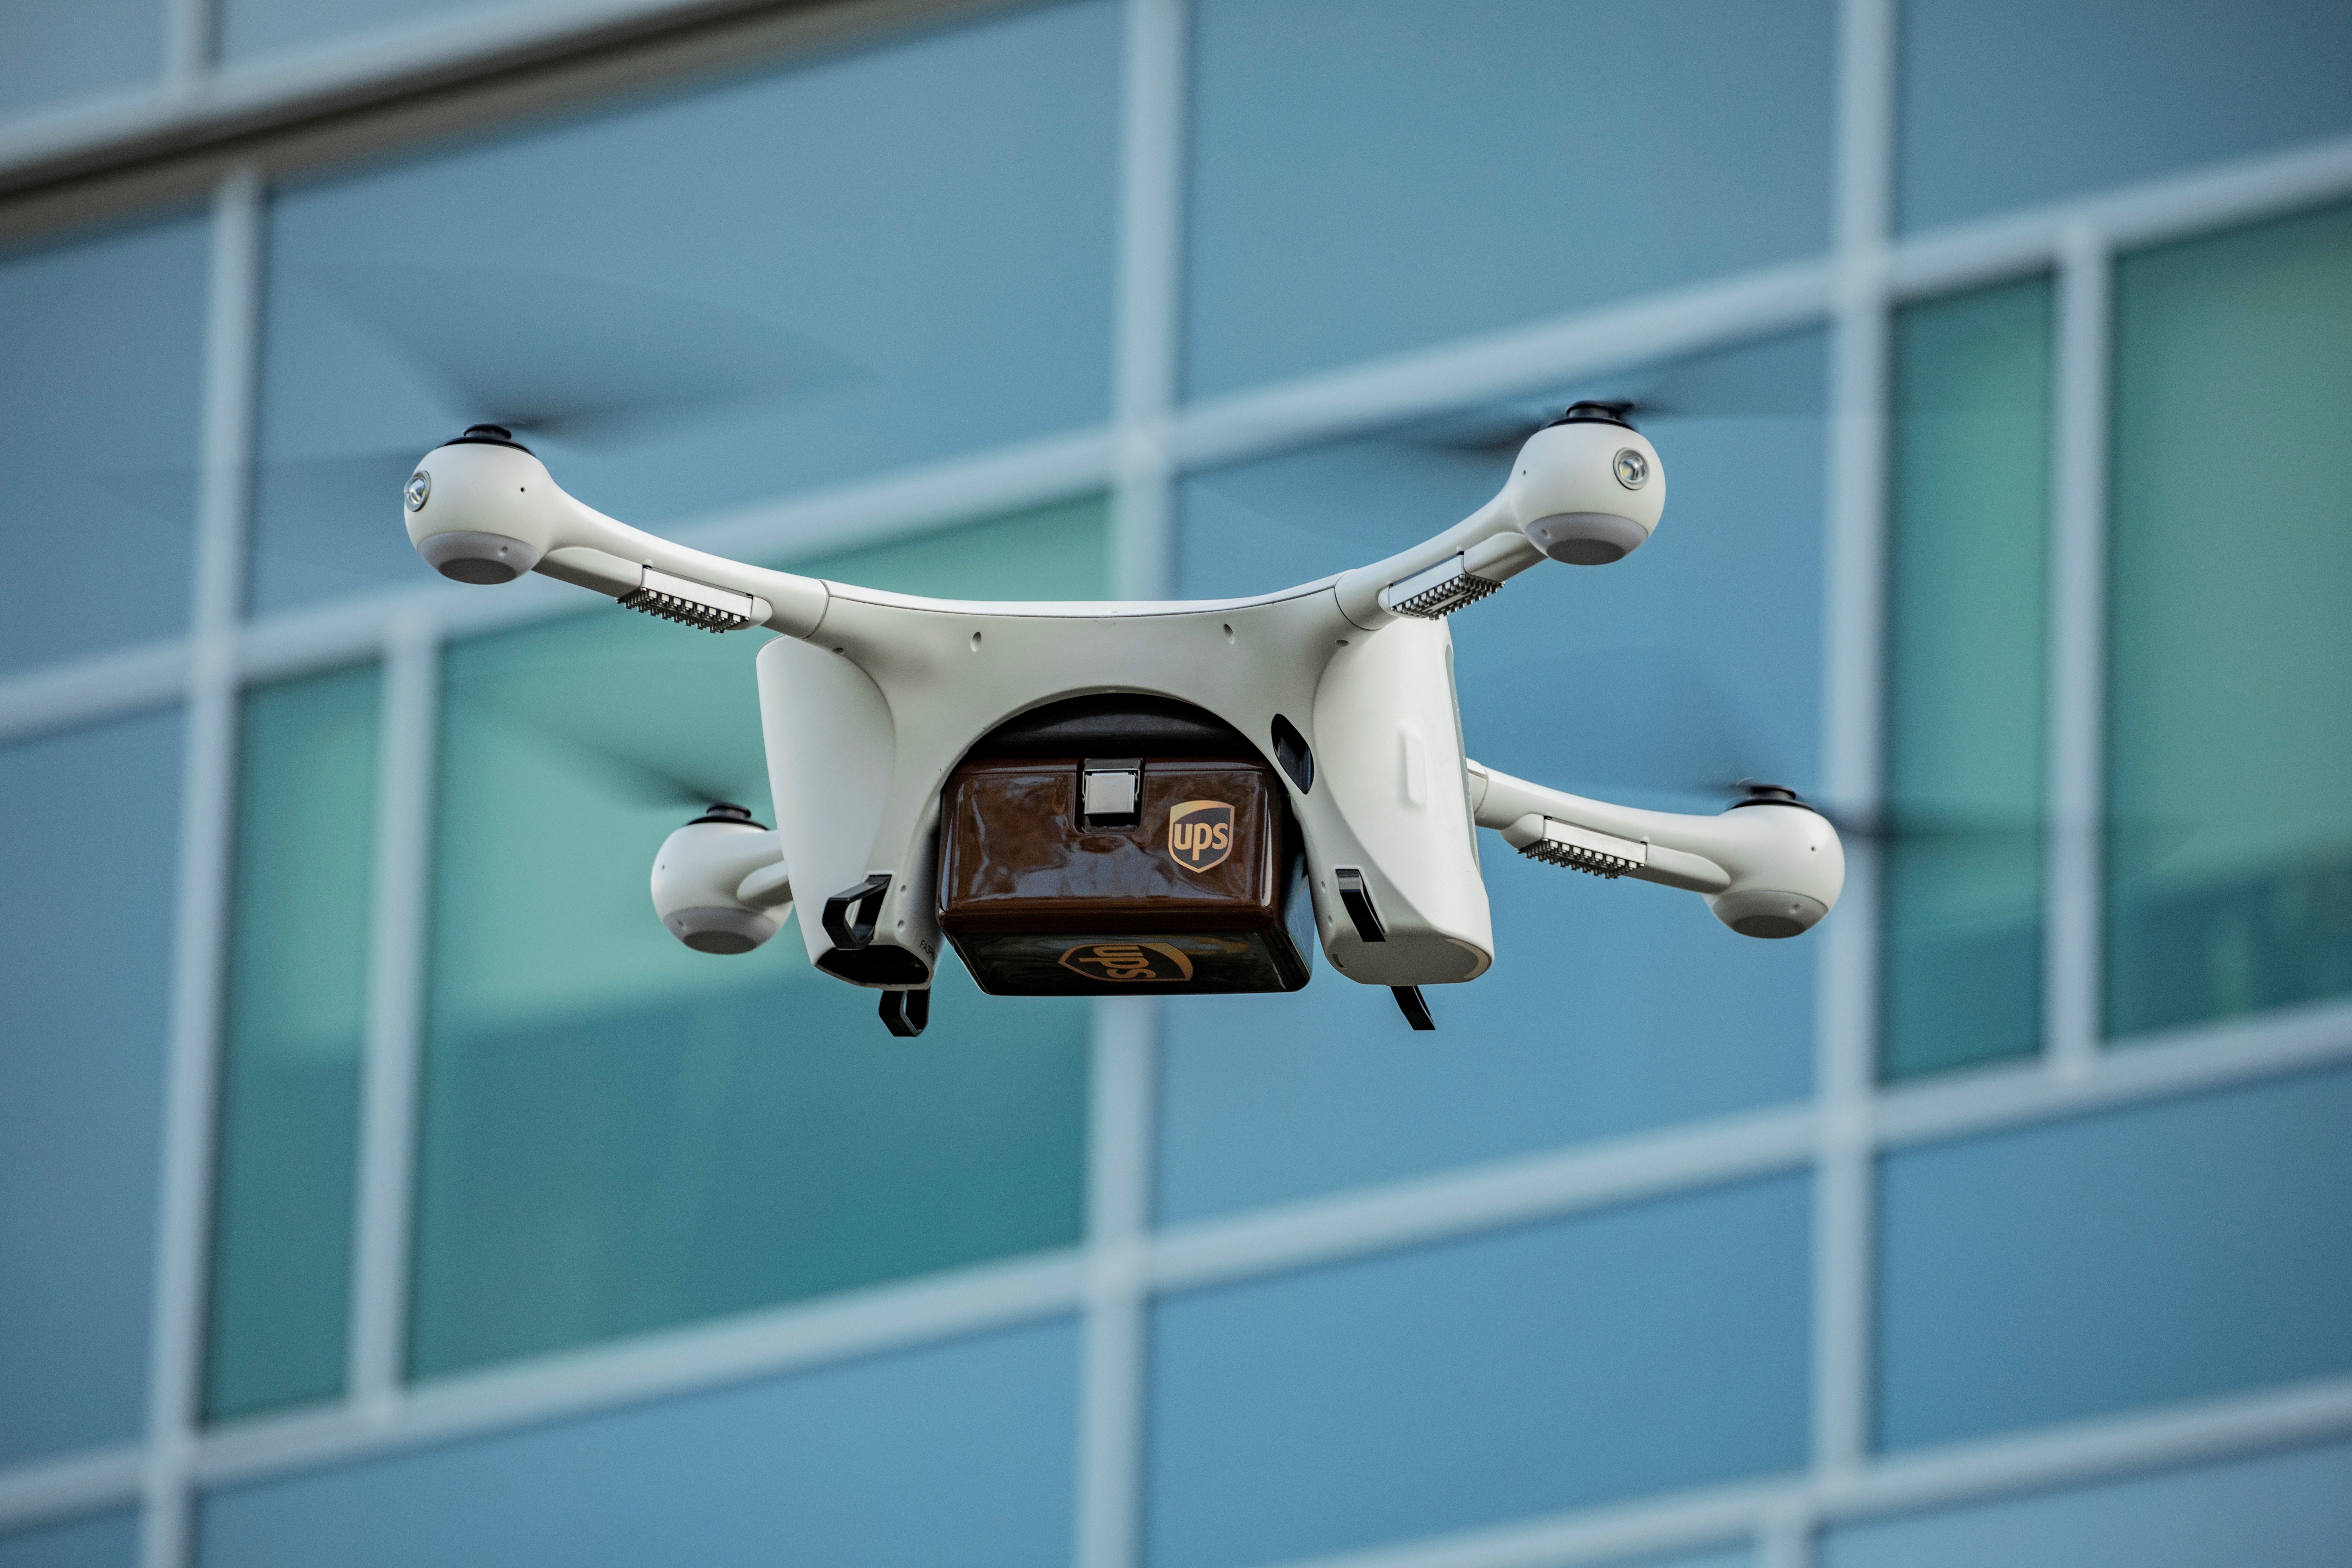 “Αόρατα” τα παράνομα drones για τους πιλότους αεροσκαφών!